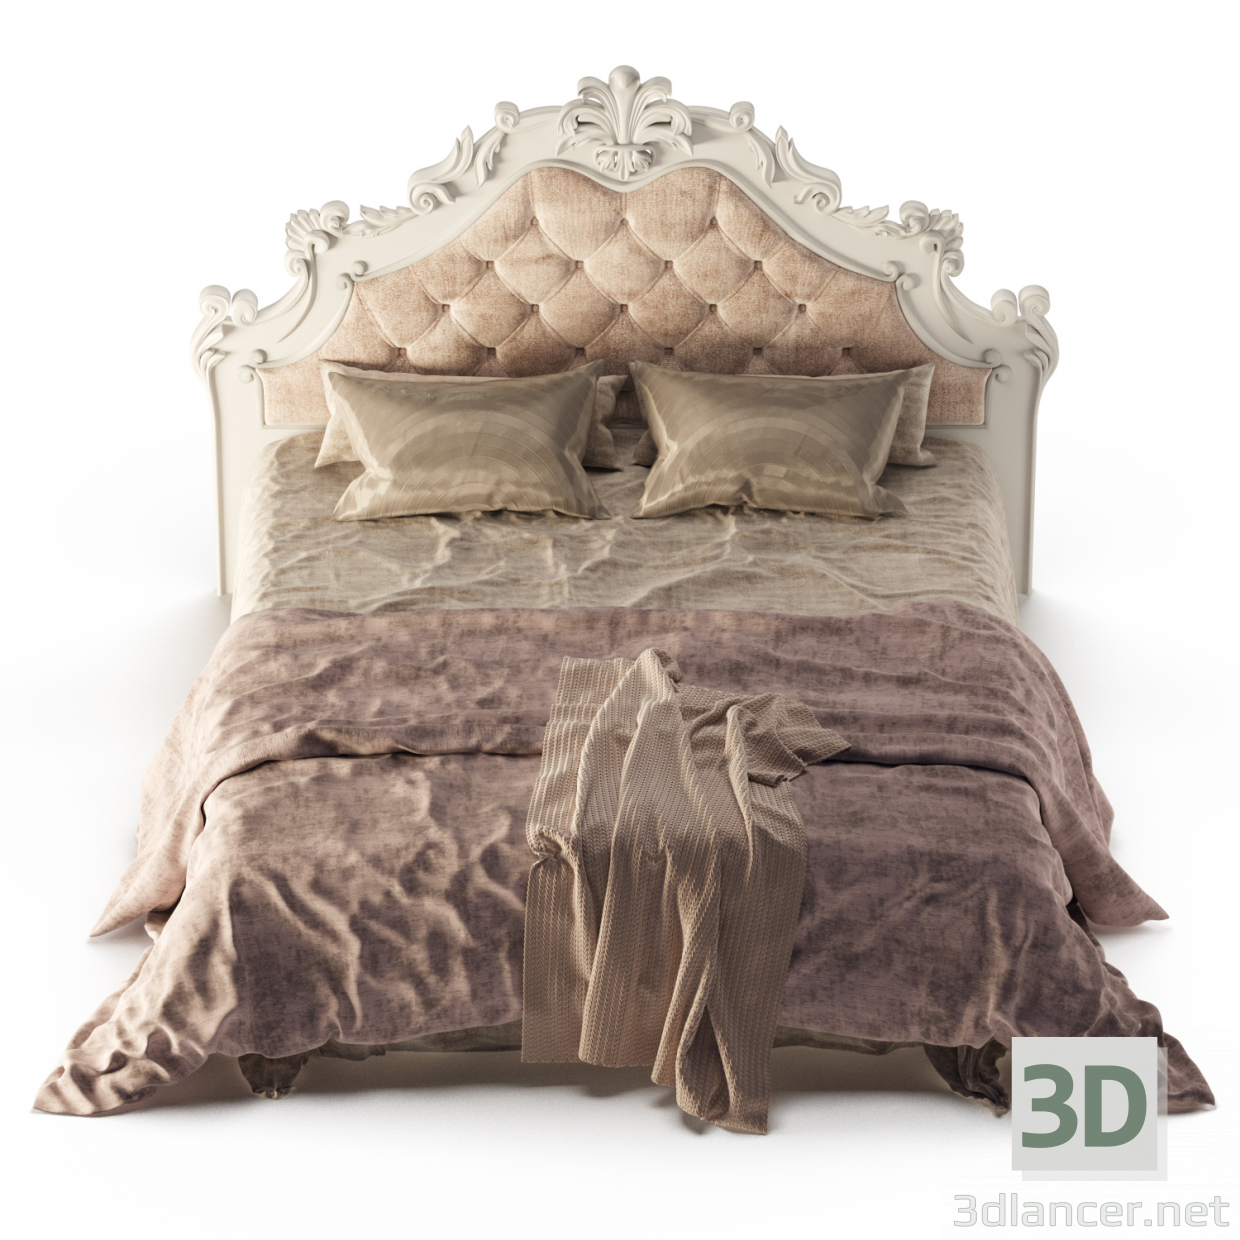 3d BED in the bedroom model buy - render